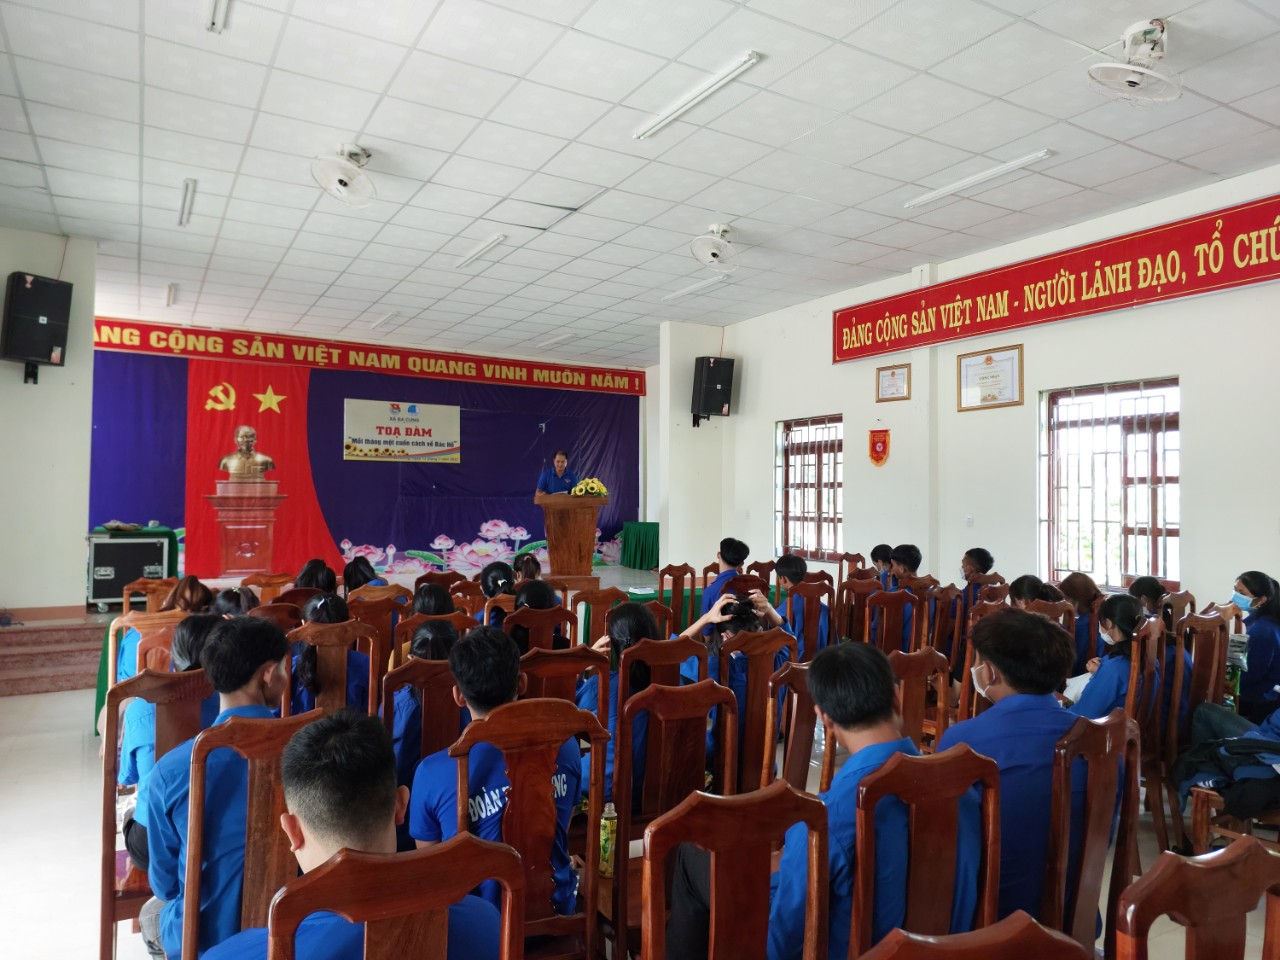 Đoàn huyện Ba Tơ chỉ đạo Đoàn xã Ba Cung tổ chức điểm Tọa đàm mỗi tháng một cuốn sách về Bác Hồ